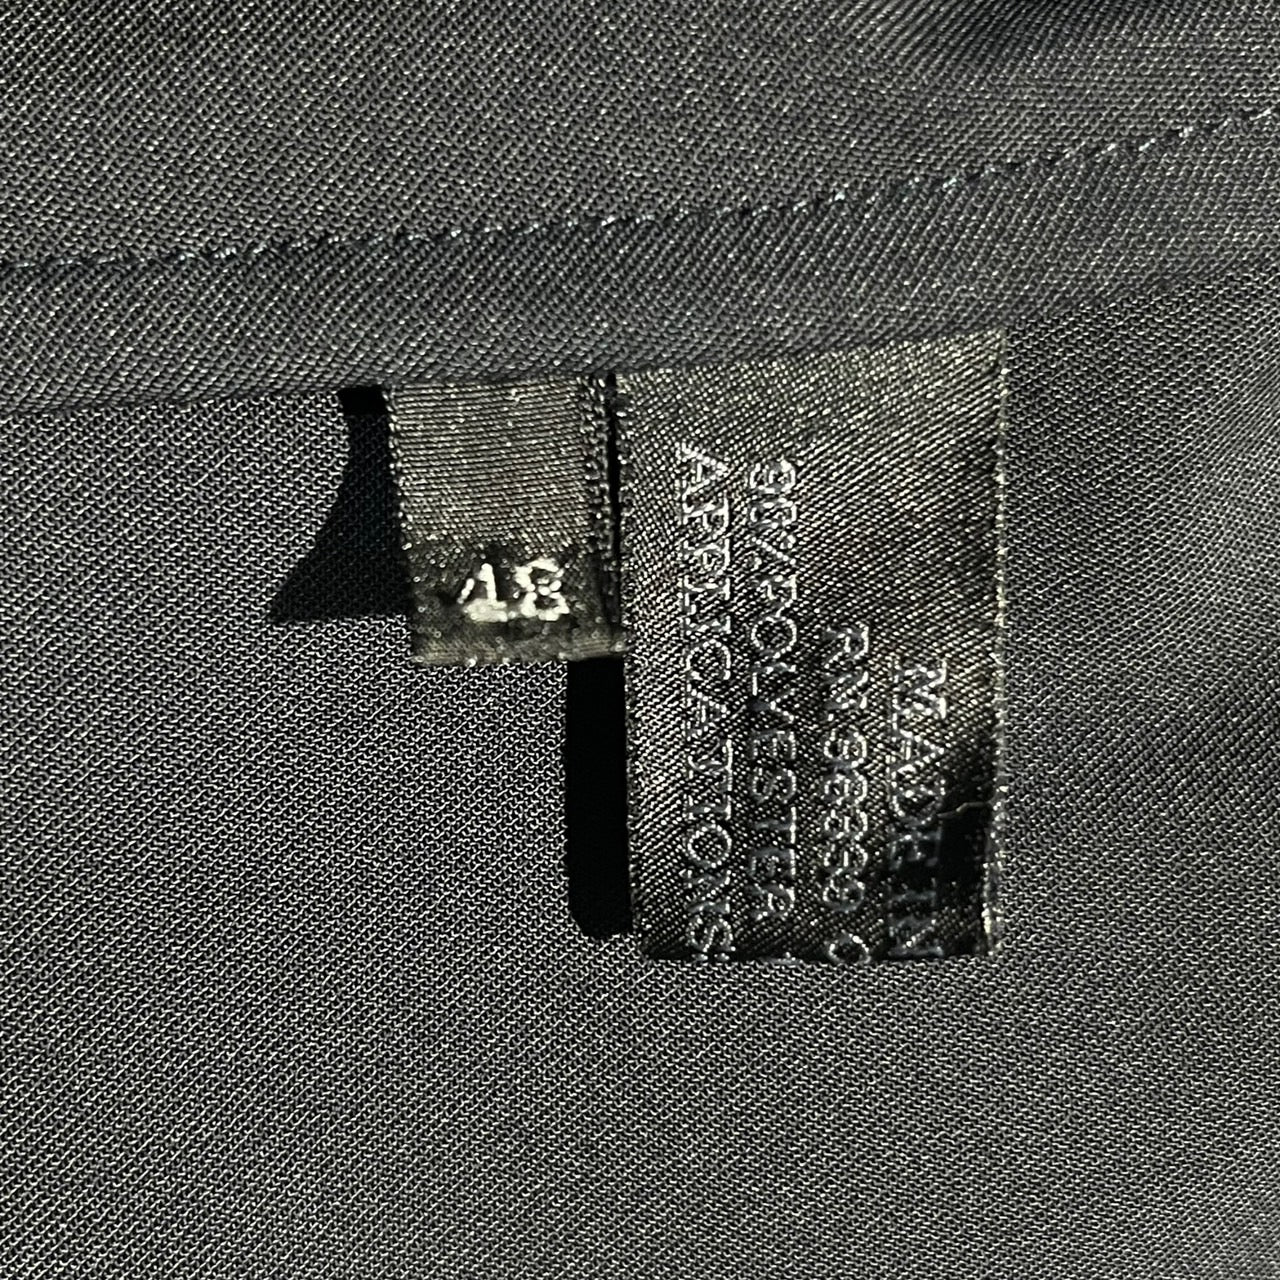 PRADA(プラダ) エルボーパッチ3Bジャケット 48(Lサイズ程度) ネイビー